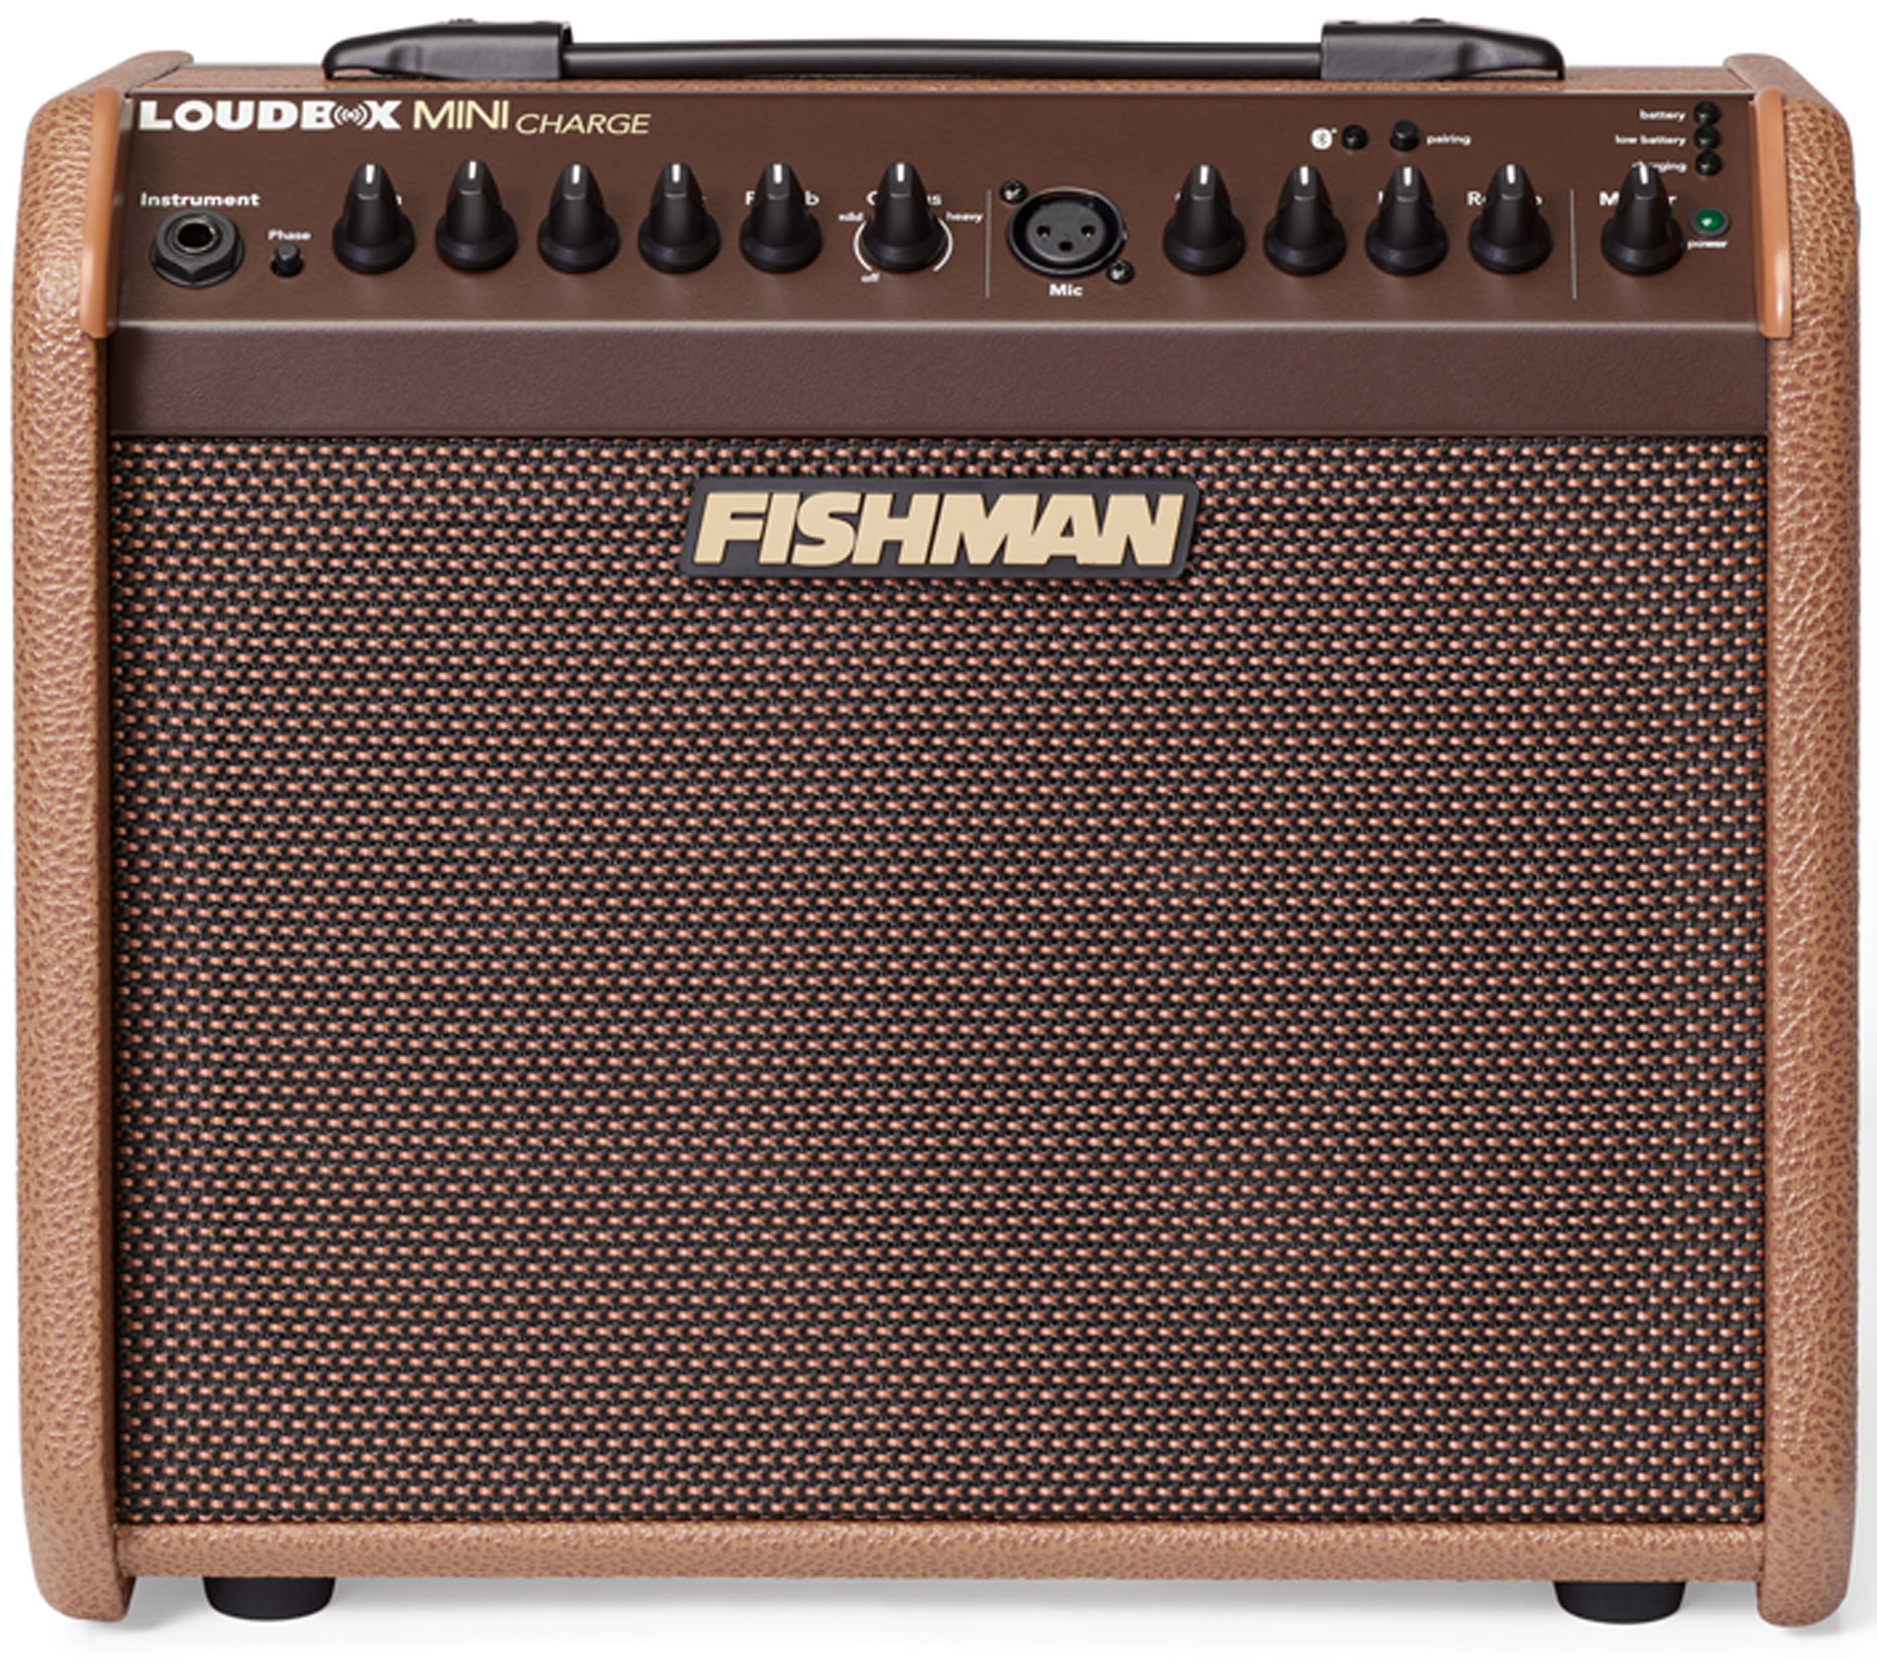  Fishman Loudbox Mini Charge 